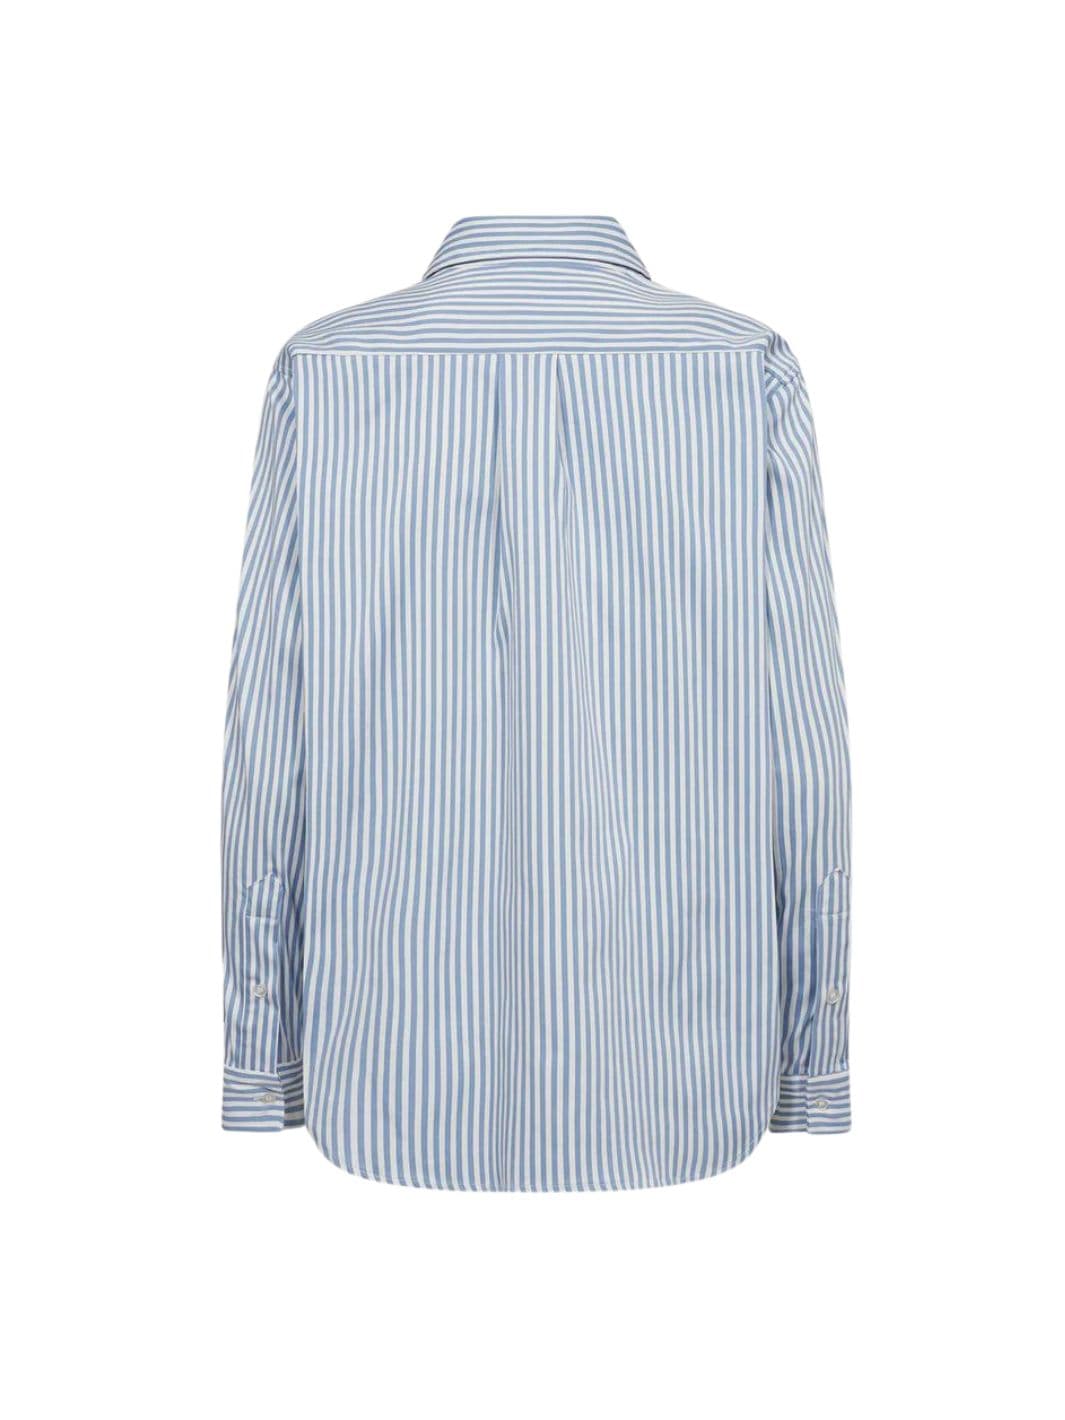 Tomorrow Shirts Skjorte | Moussa Shirt Striped Sky Blue